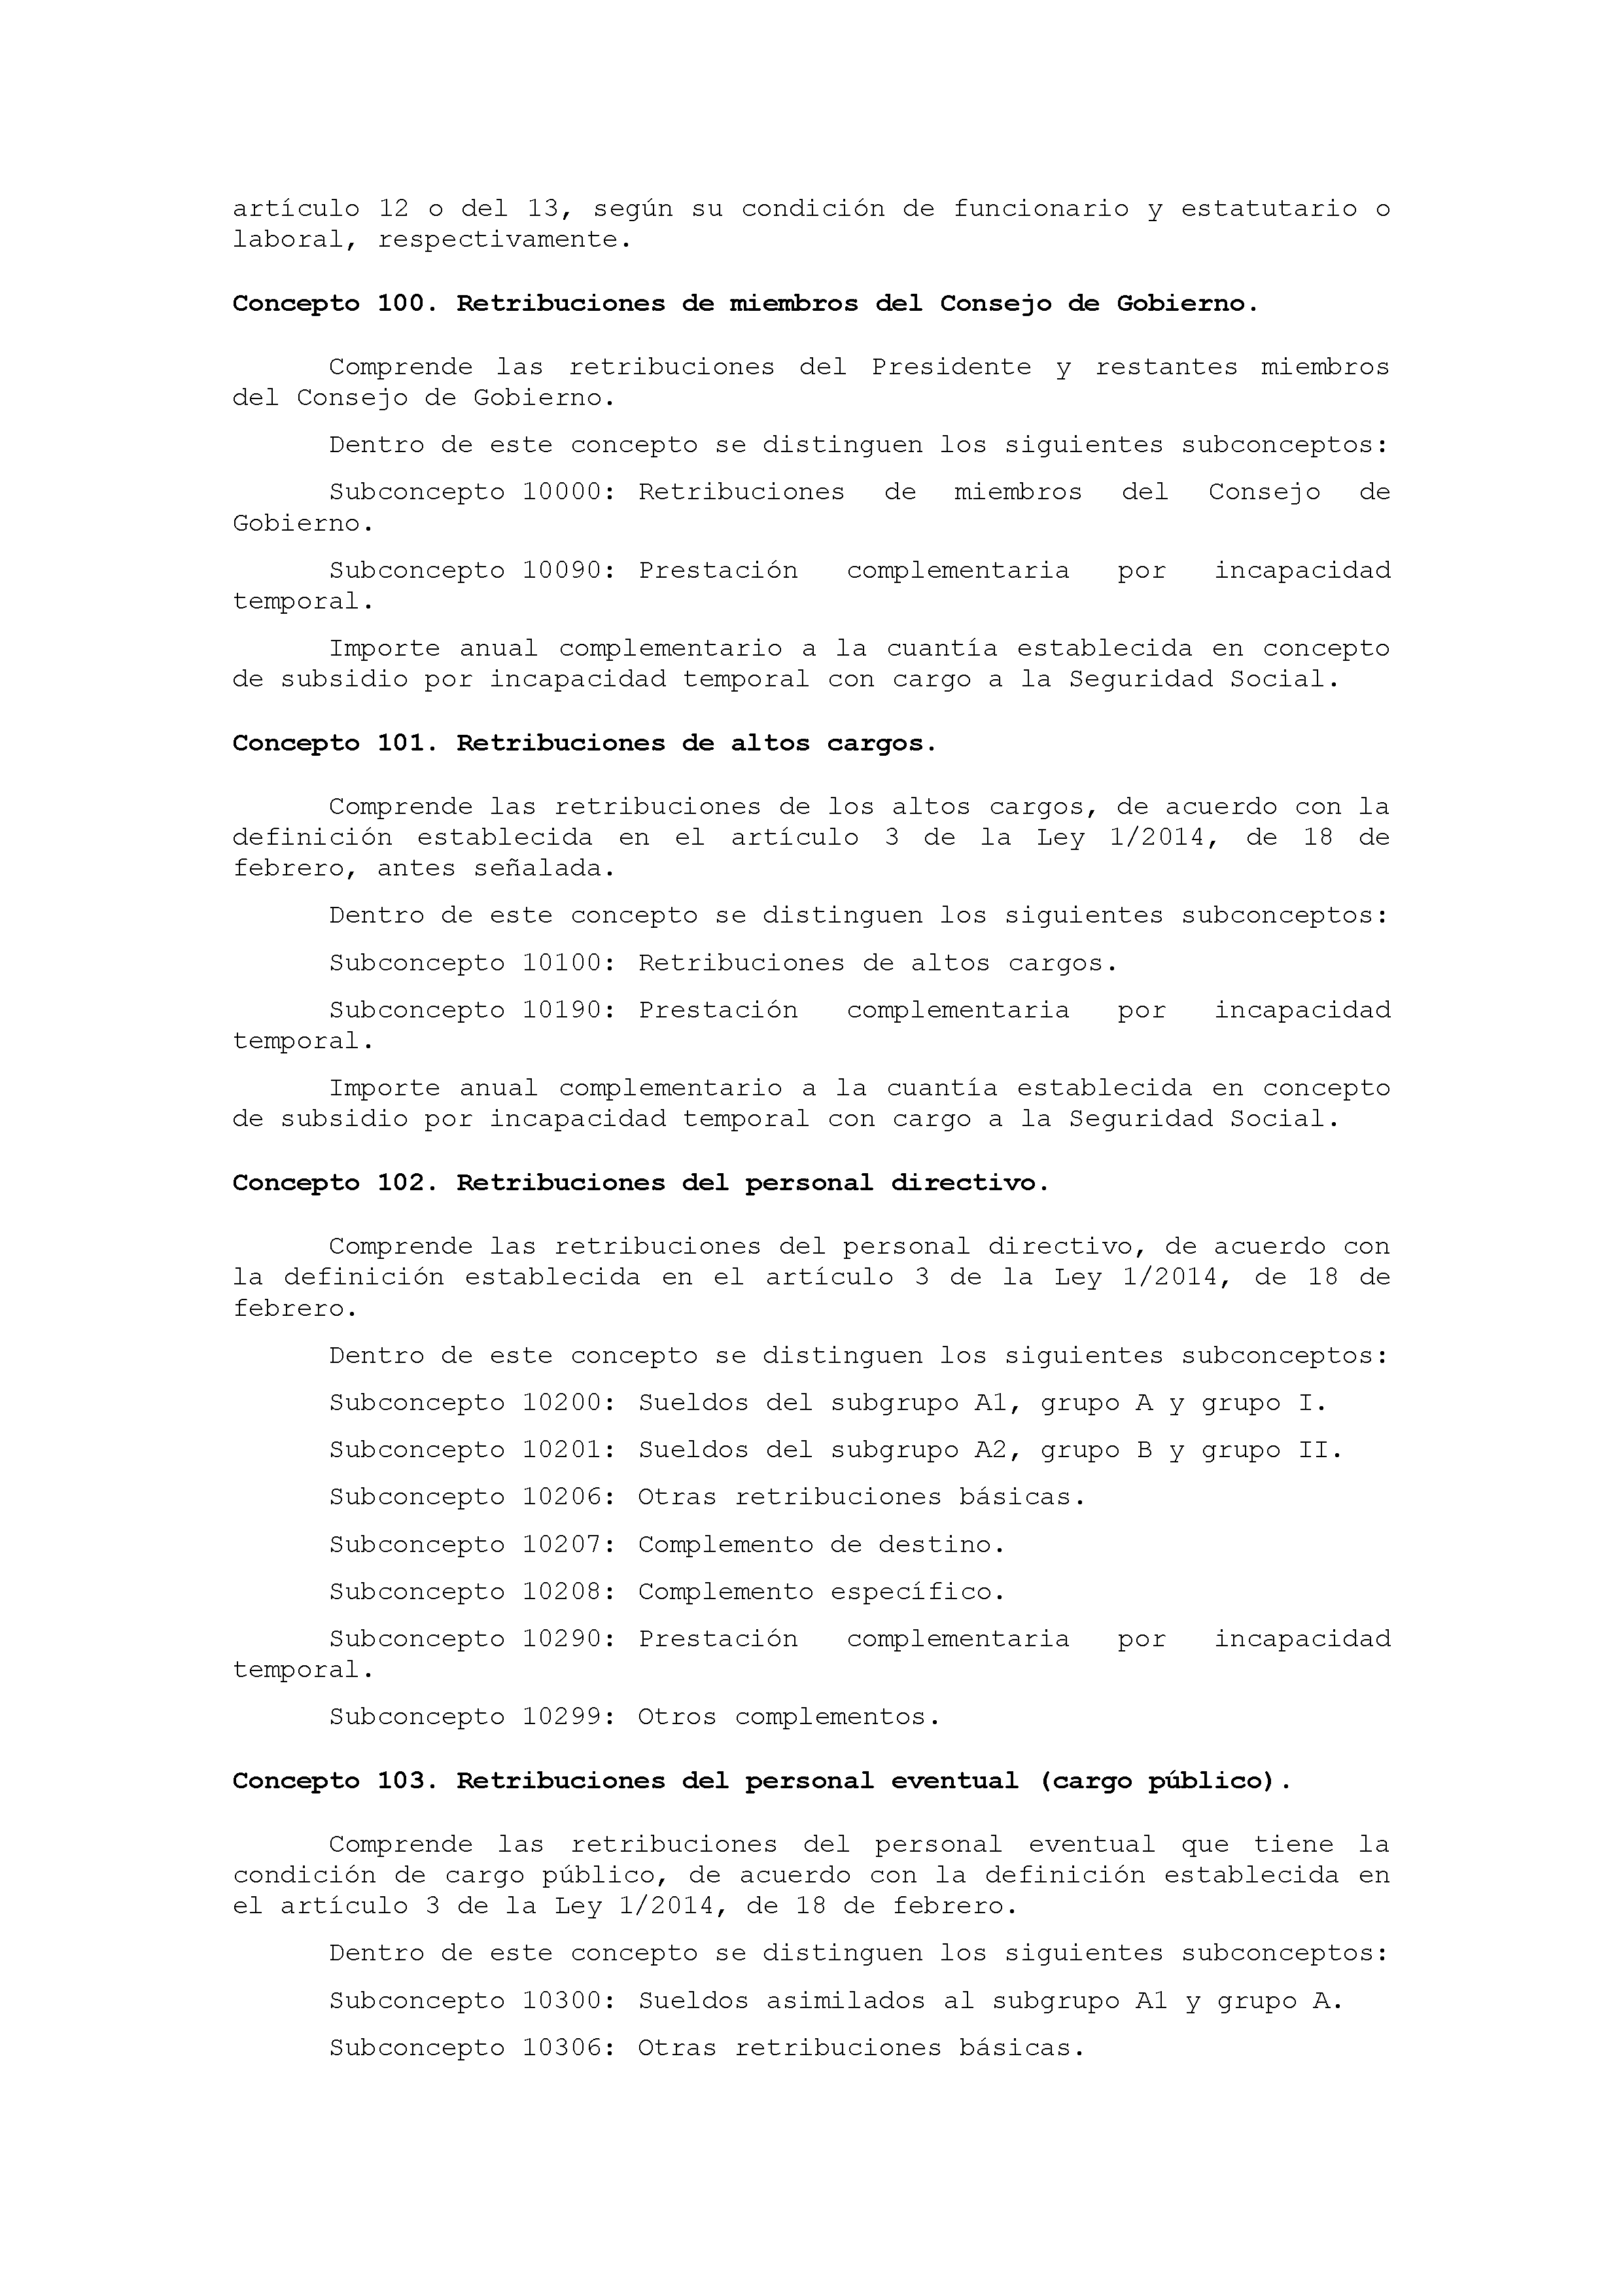 ANEXO IX CÓDIGO DE LA CLASIFICACIÓN ECONÓMICA DE LOS GASTOS PÚBLICOS Pag 2